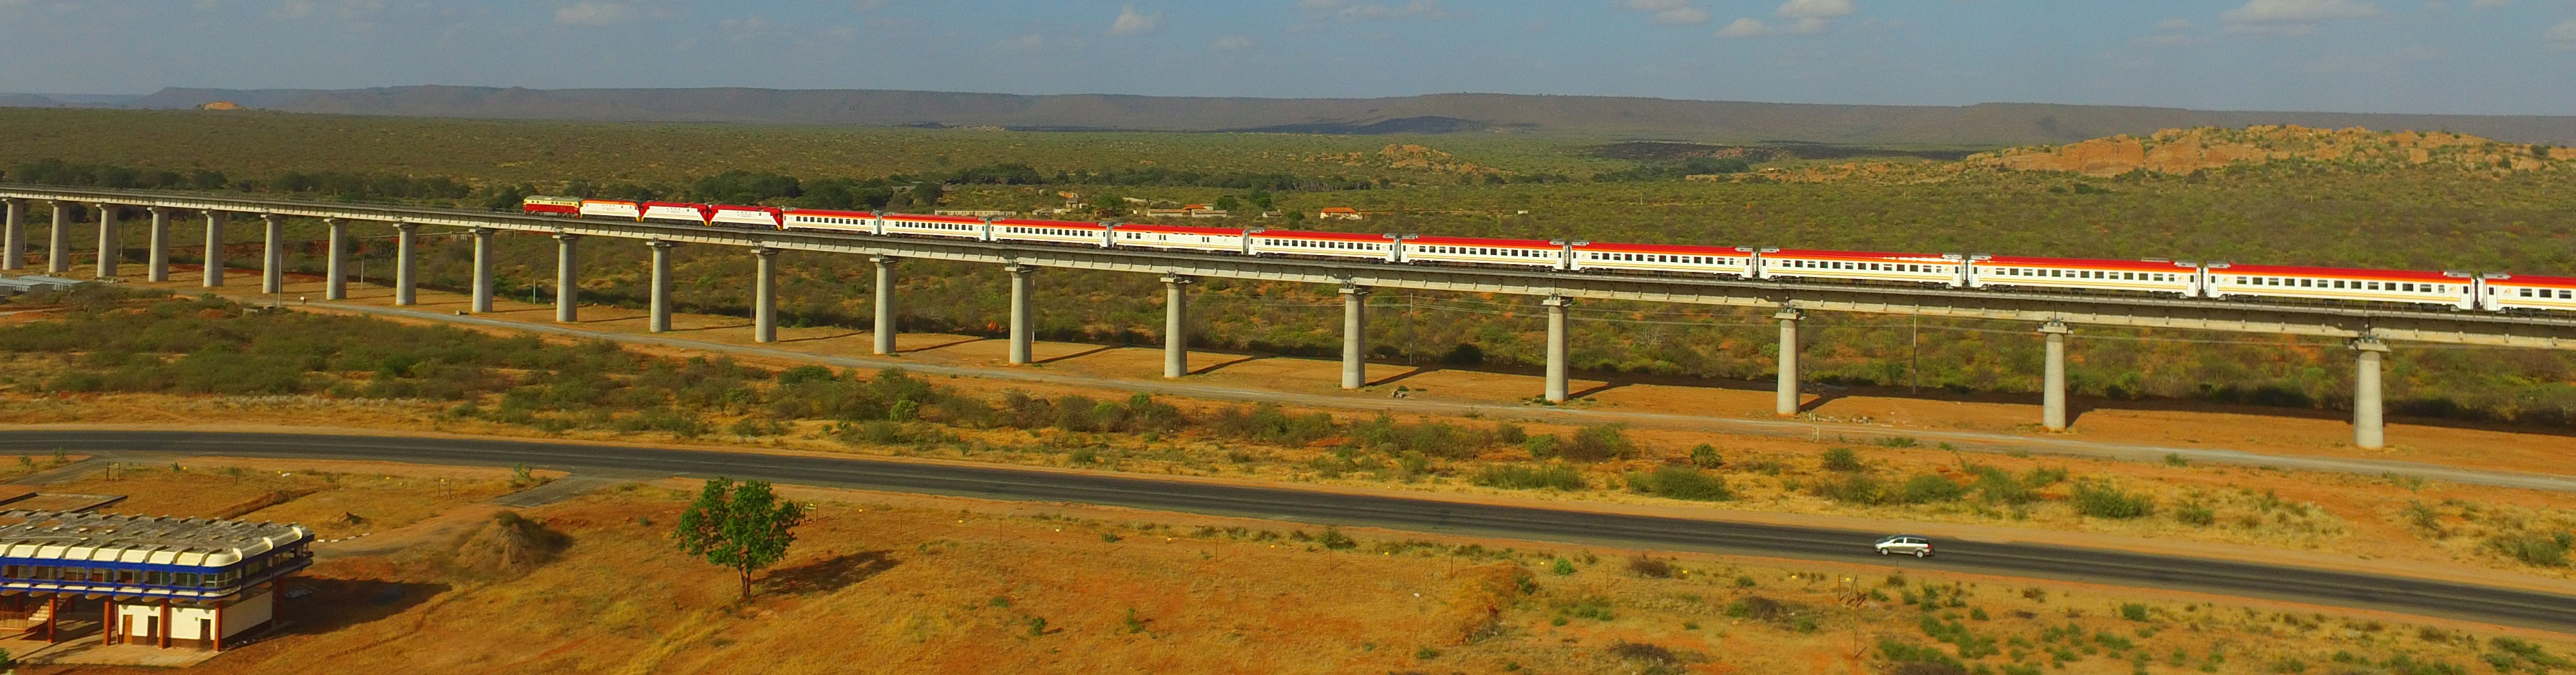 Kenya's standard gauge railway. Image by Kenya Railways 